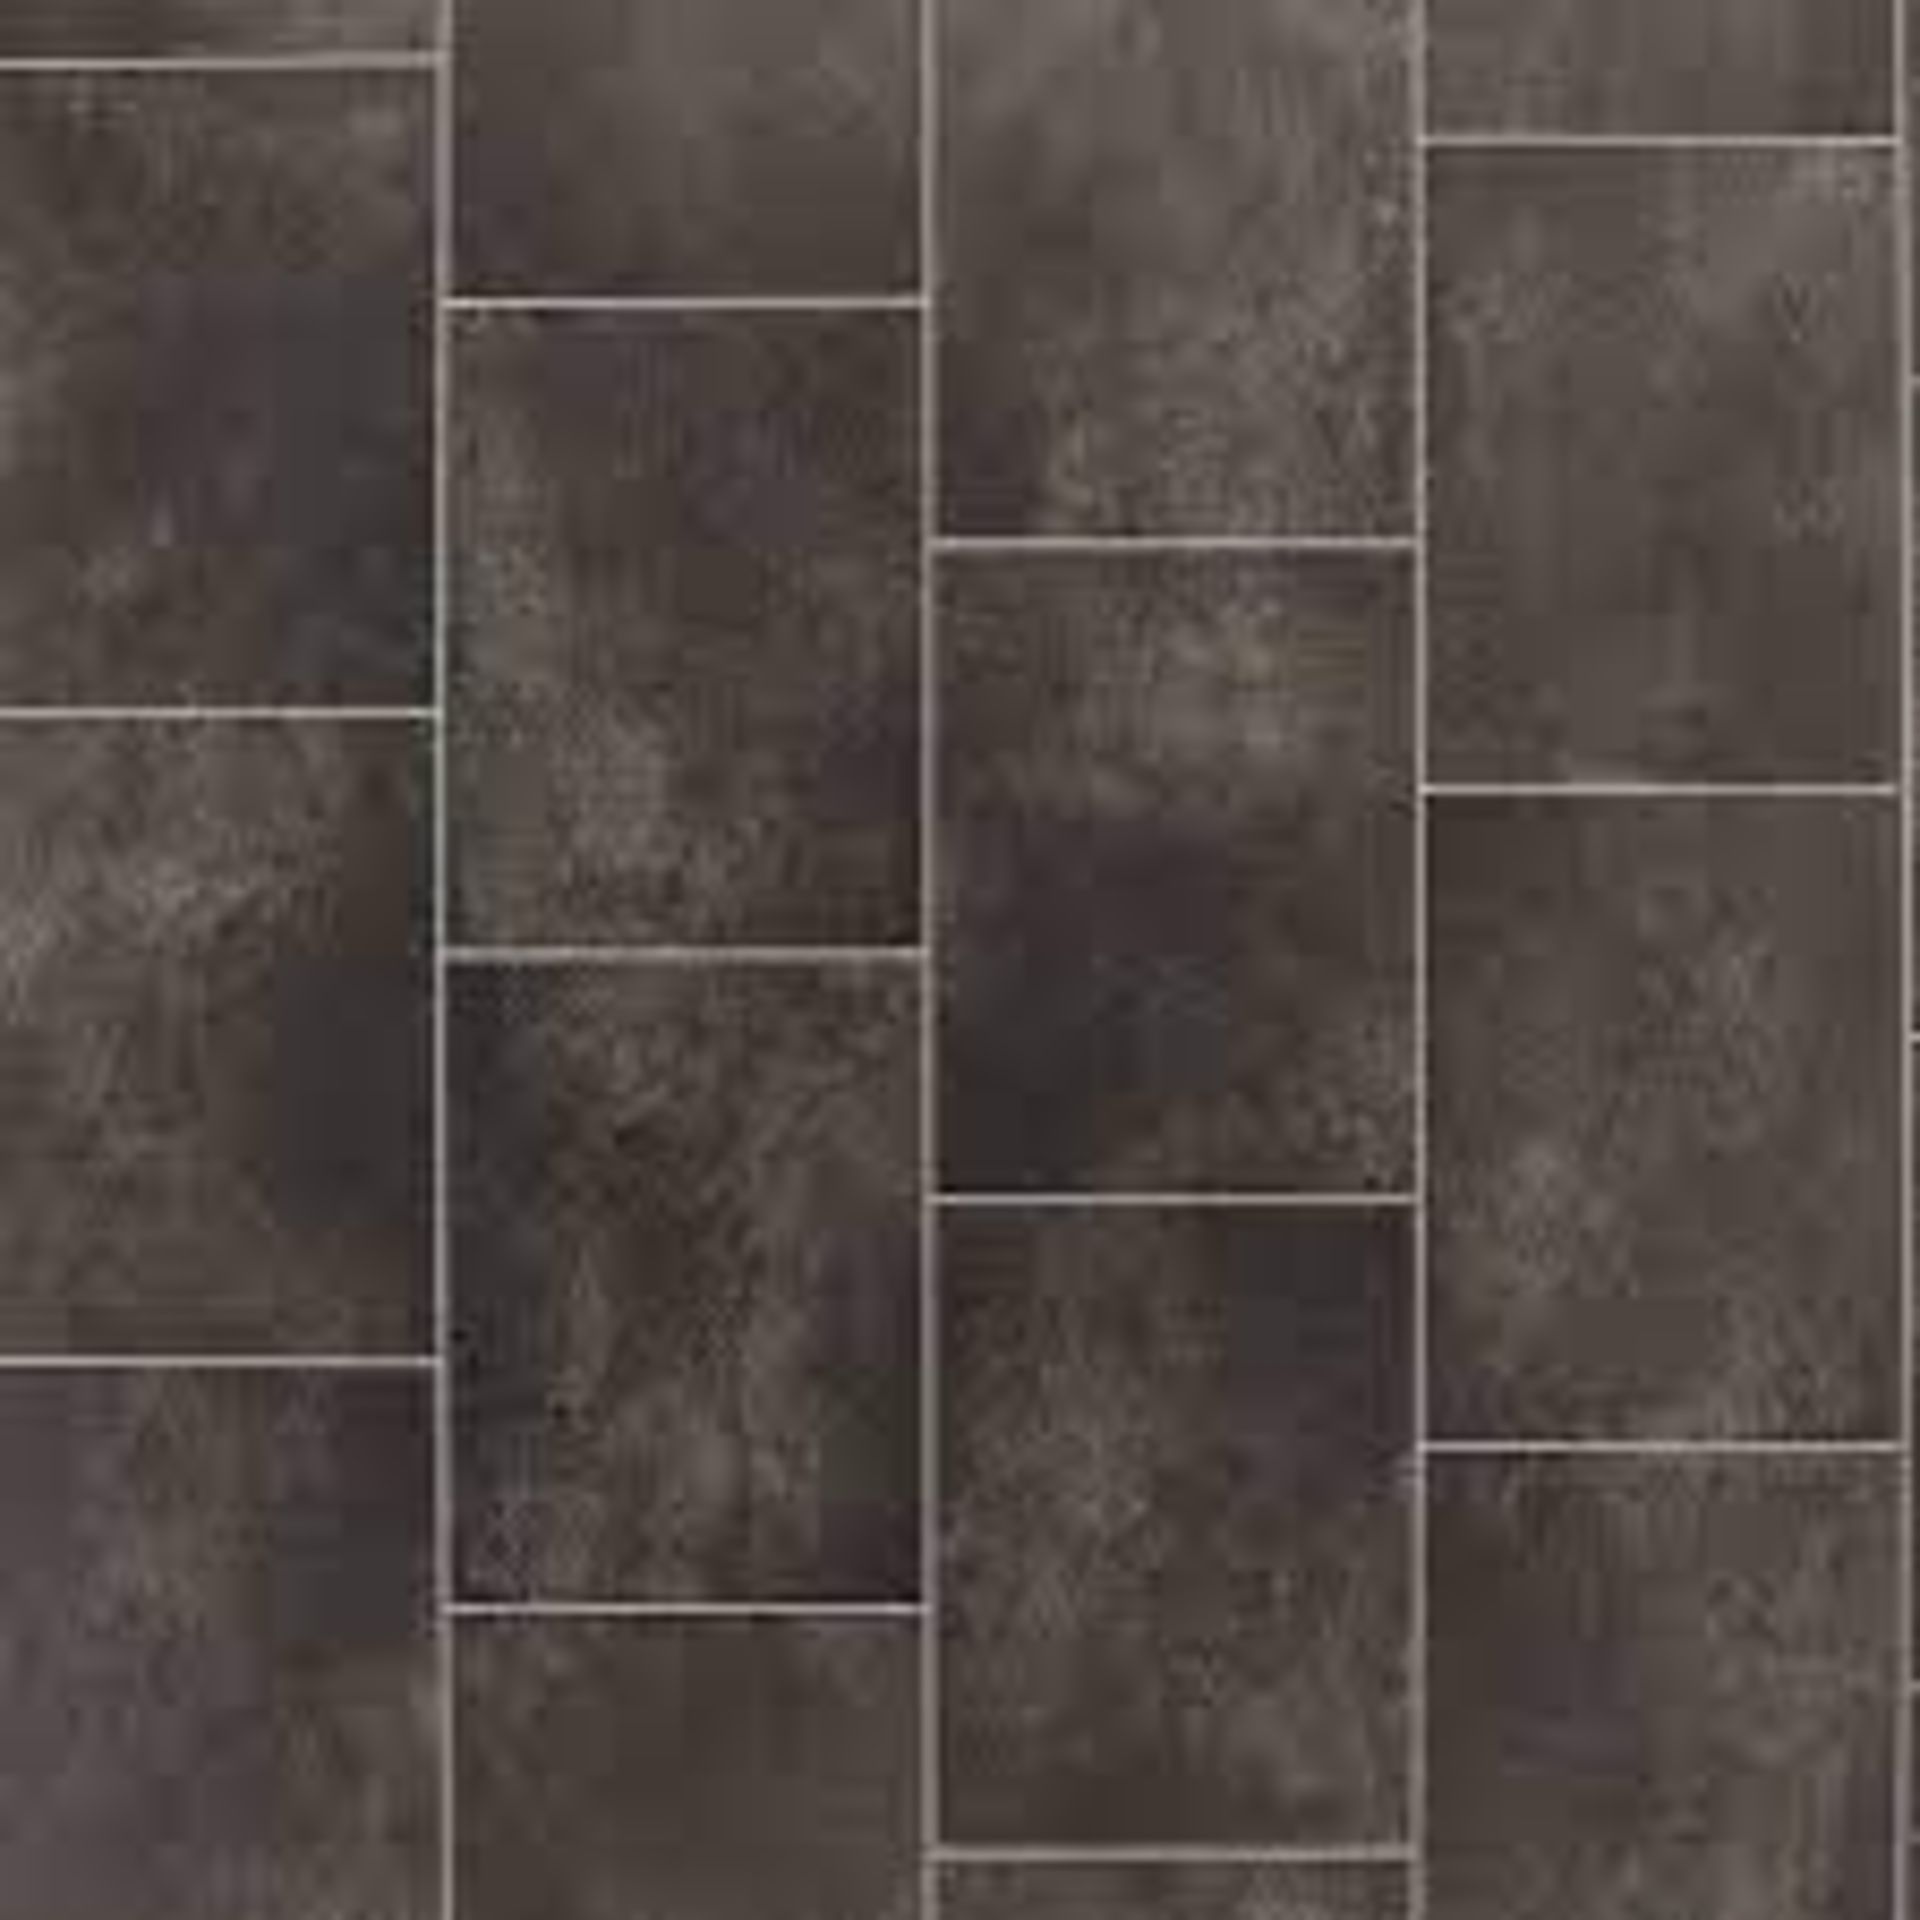 12m2 of Black Slate Tile Effect Vinyl Flooring. This black slate tile effect vinyl sheet will give a